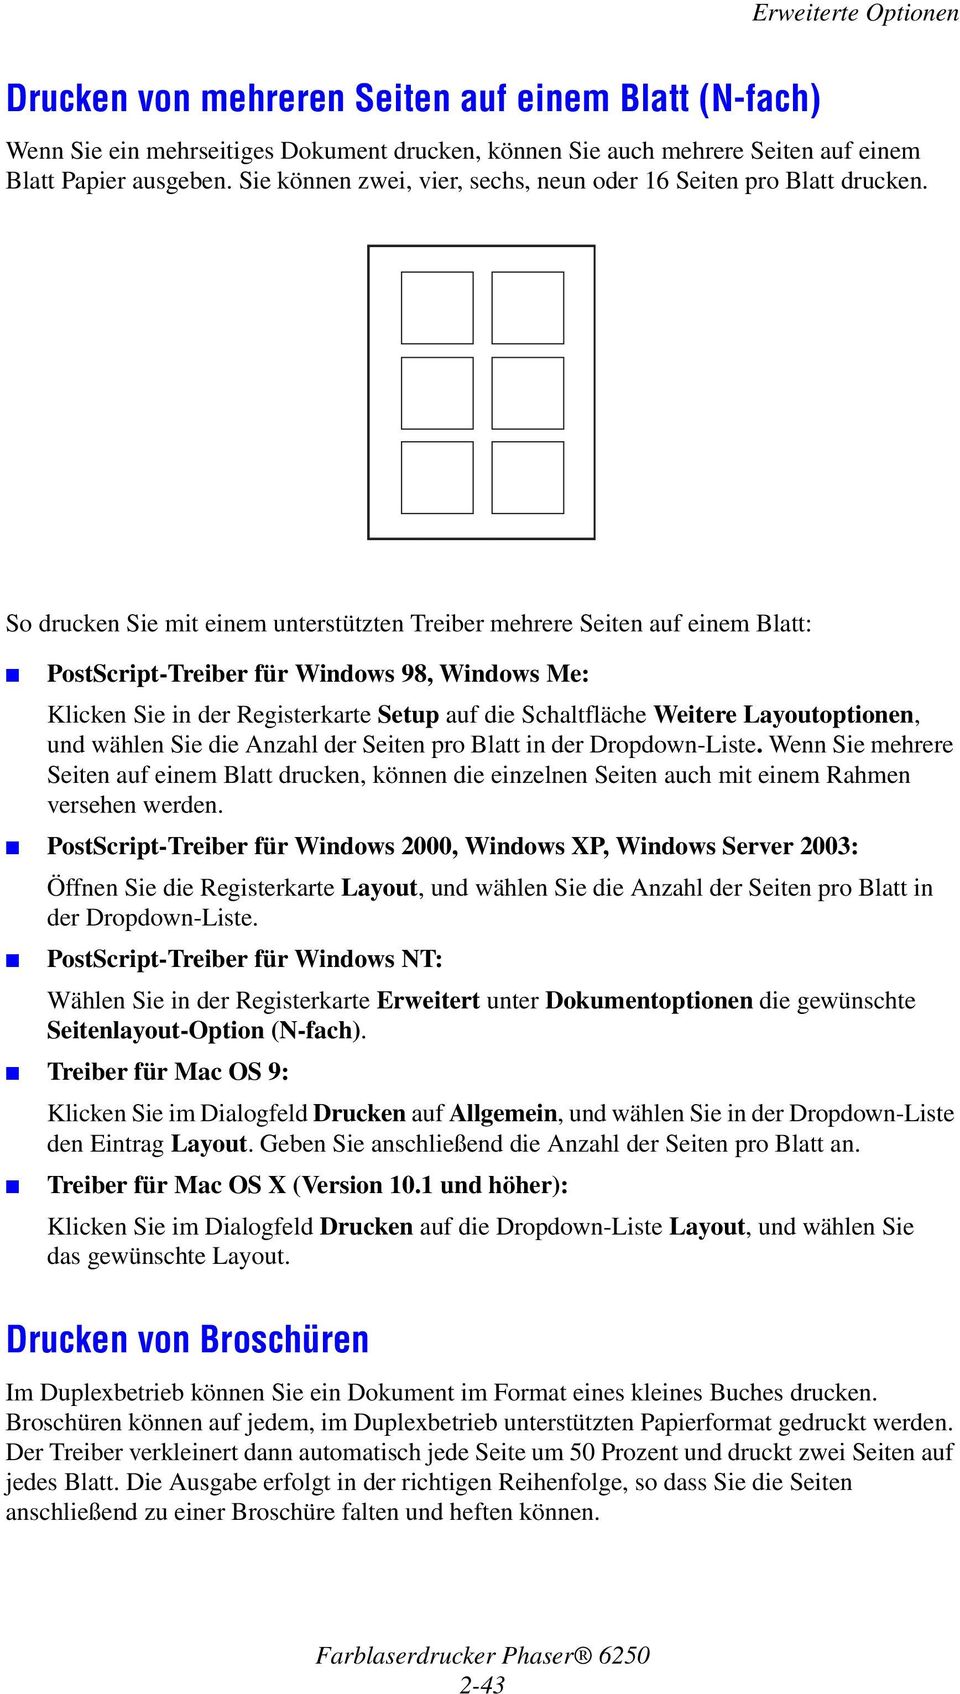 So drucken Sie mit einem unterstützten Treiber mehrere Seiten auf einem Blatt: PostScript-Treiber für Windows 98, Windows Me: Klicken Sie in der Registerkarte Setup auf die Schaltfläche Weitere